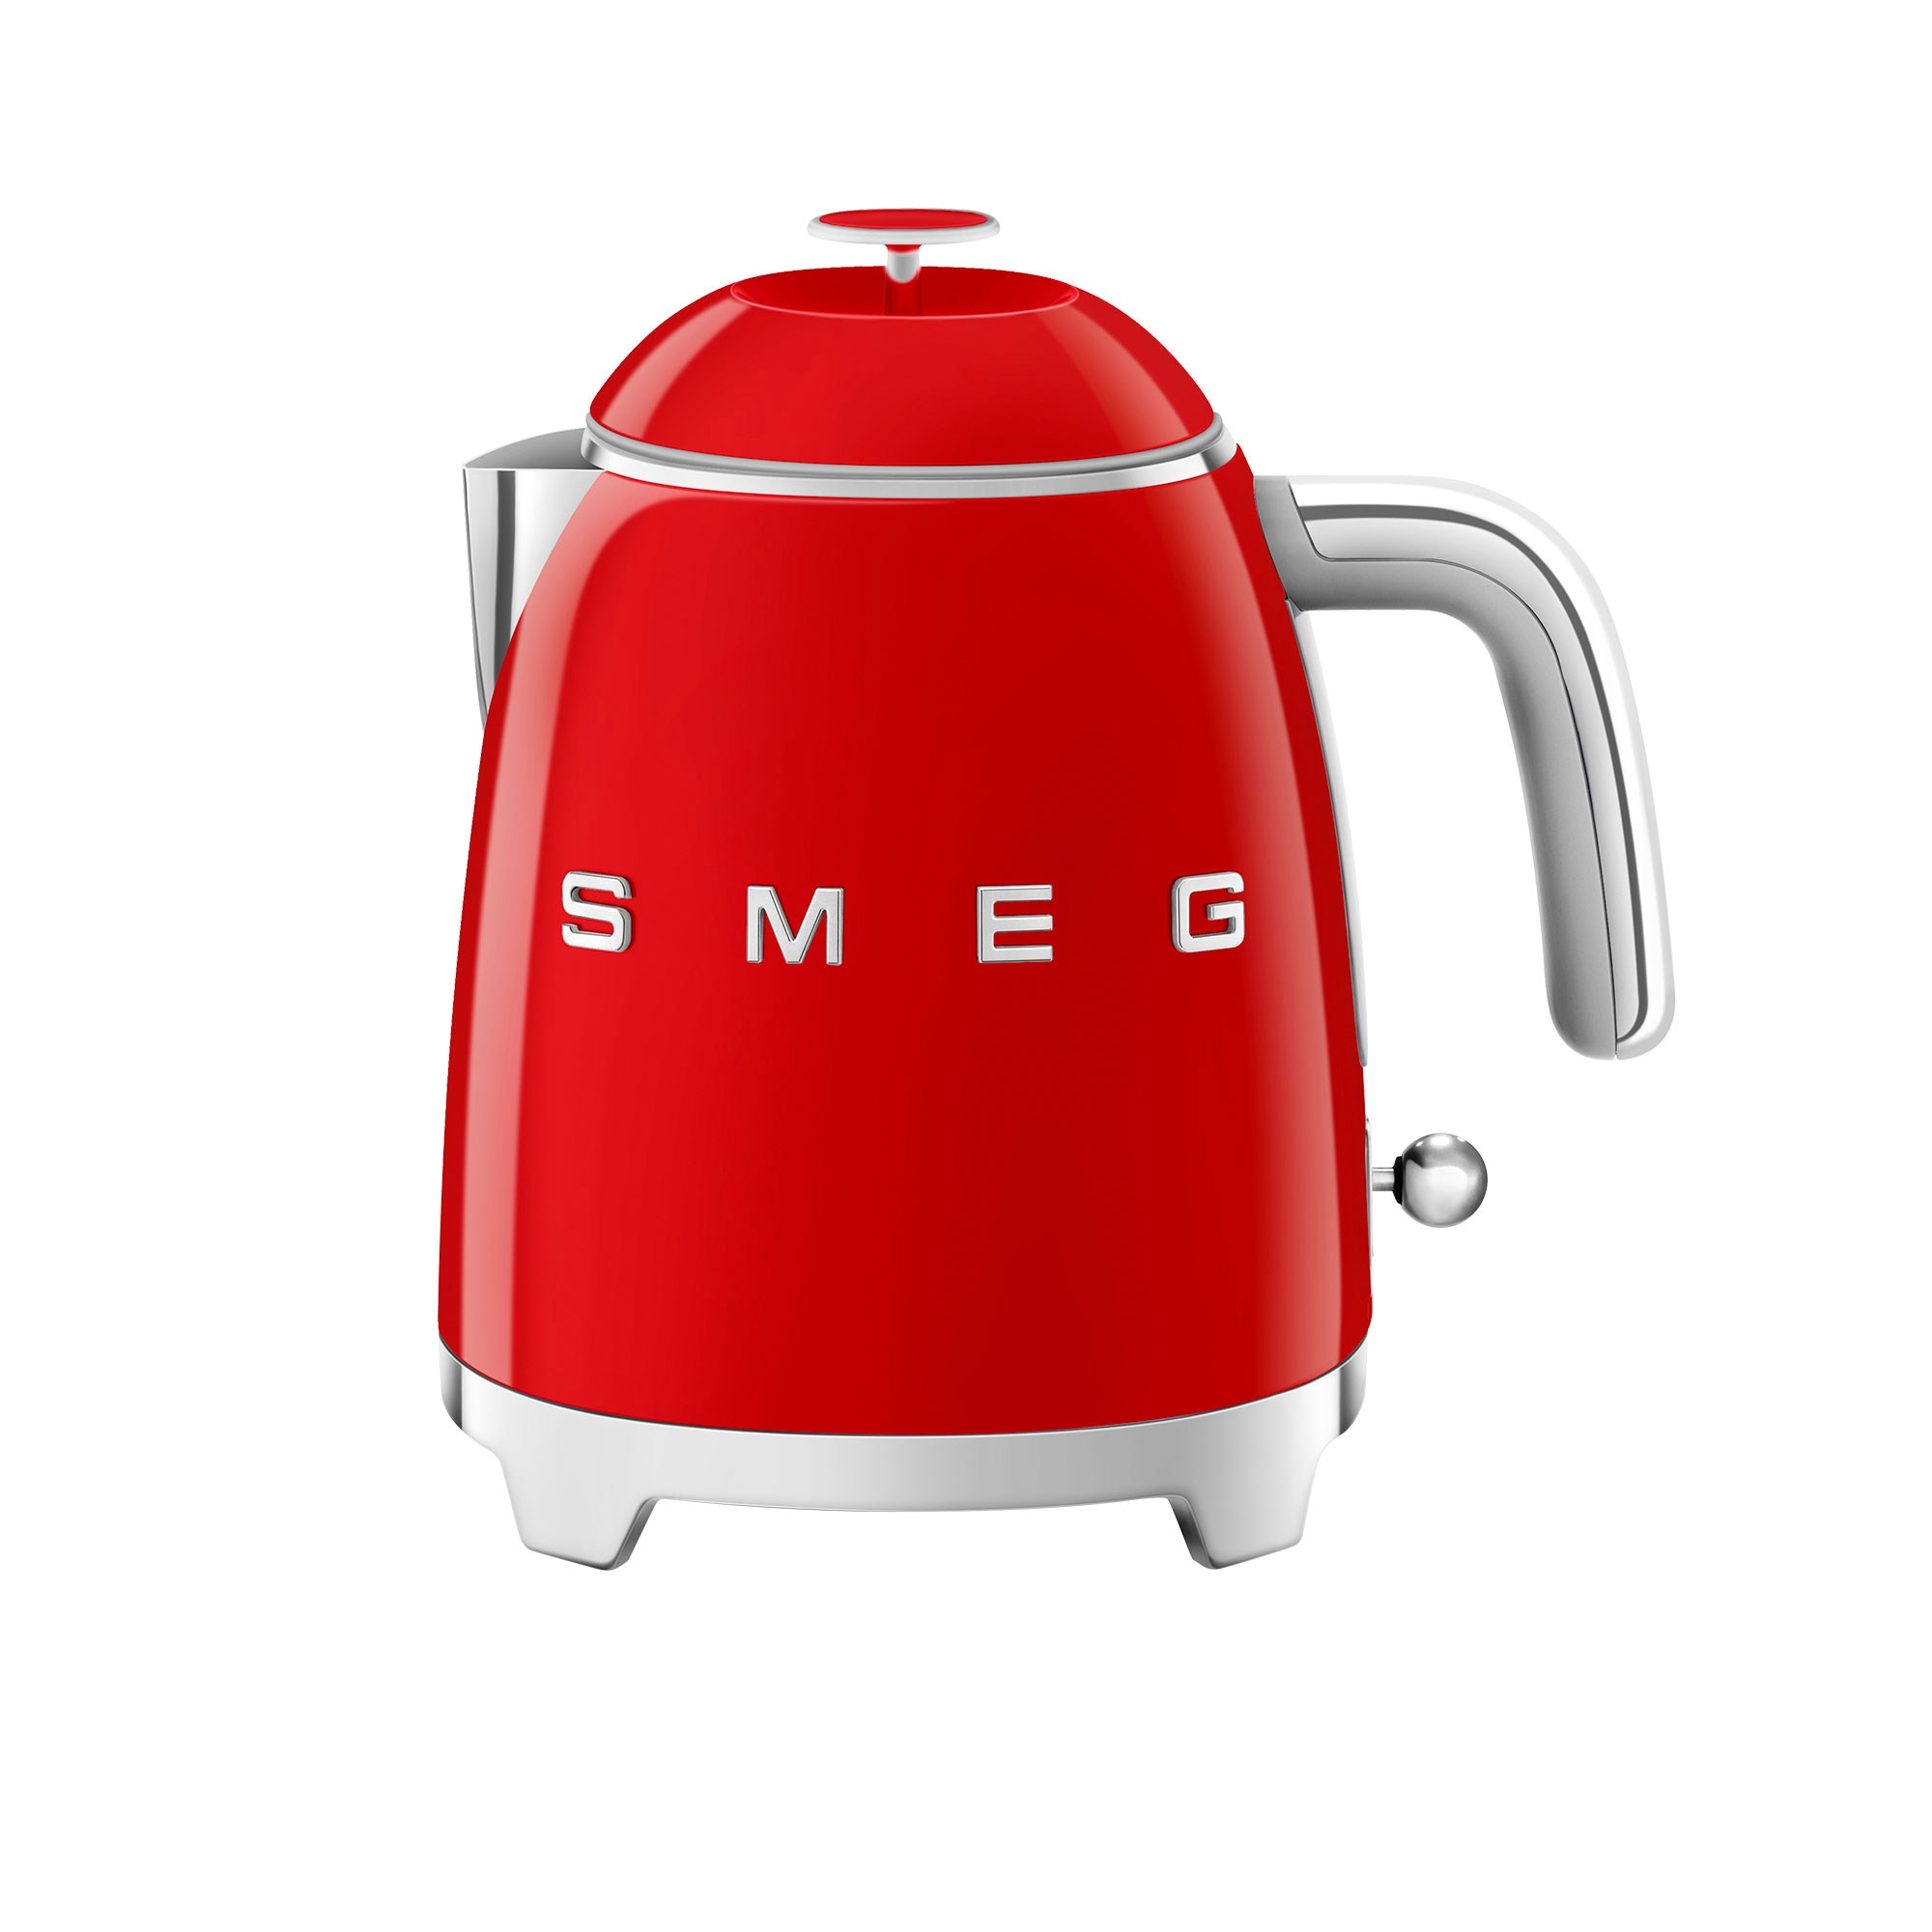 Smeg 50's Retro Style Mini Kettle 800ml Red Image 1